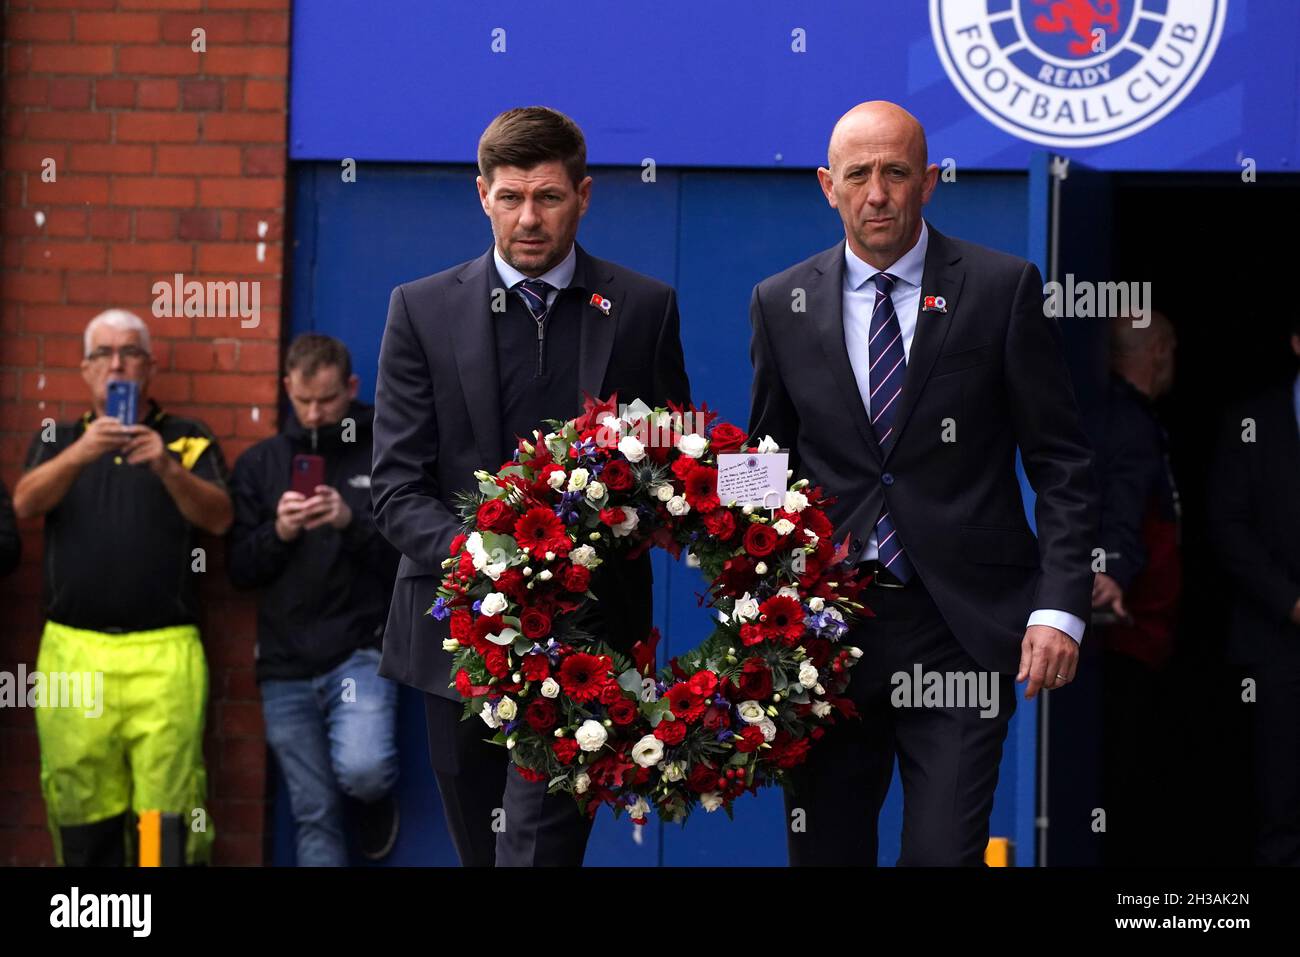 Il manager dei Rangers Steven Gerrard accanto all'allenatore Gary McAllister (a destra) porta una corona da posare all'Ibrox Stadium in memoria dell'ex Scozia, Rangers e Everton manager Walter Smith morto ieri (martedì 26 ottobre) di 73 anni. Data foto: Mercoledì 27 ottobre 2021. Foto Stock